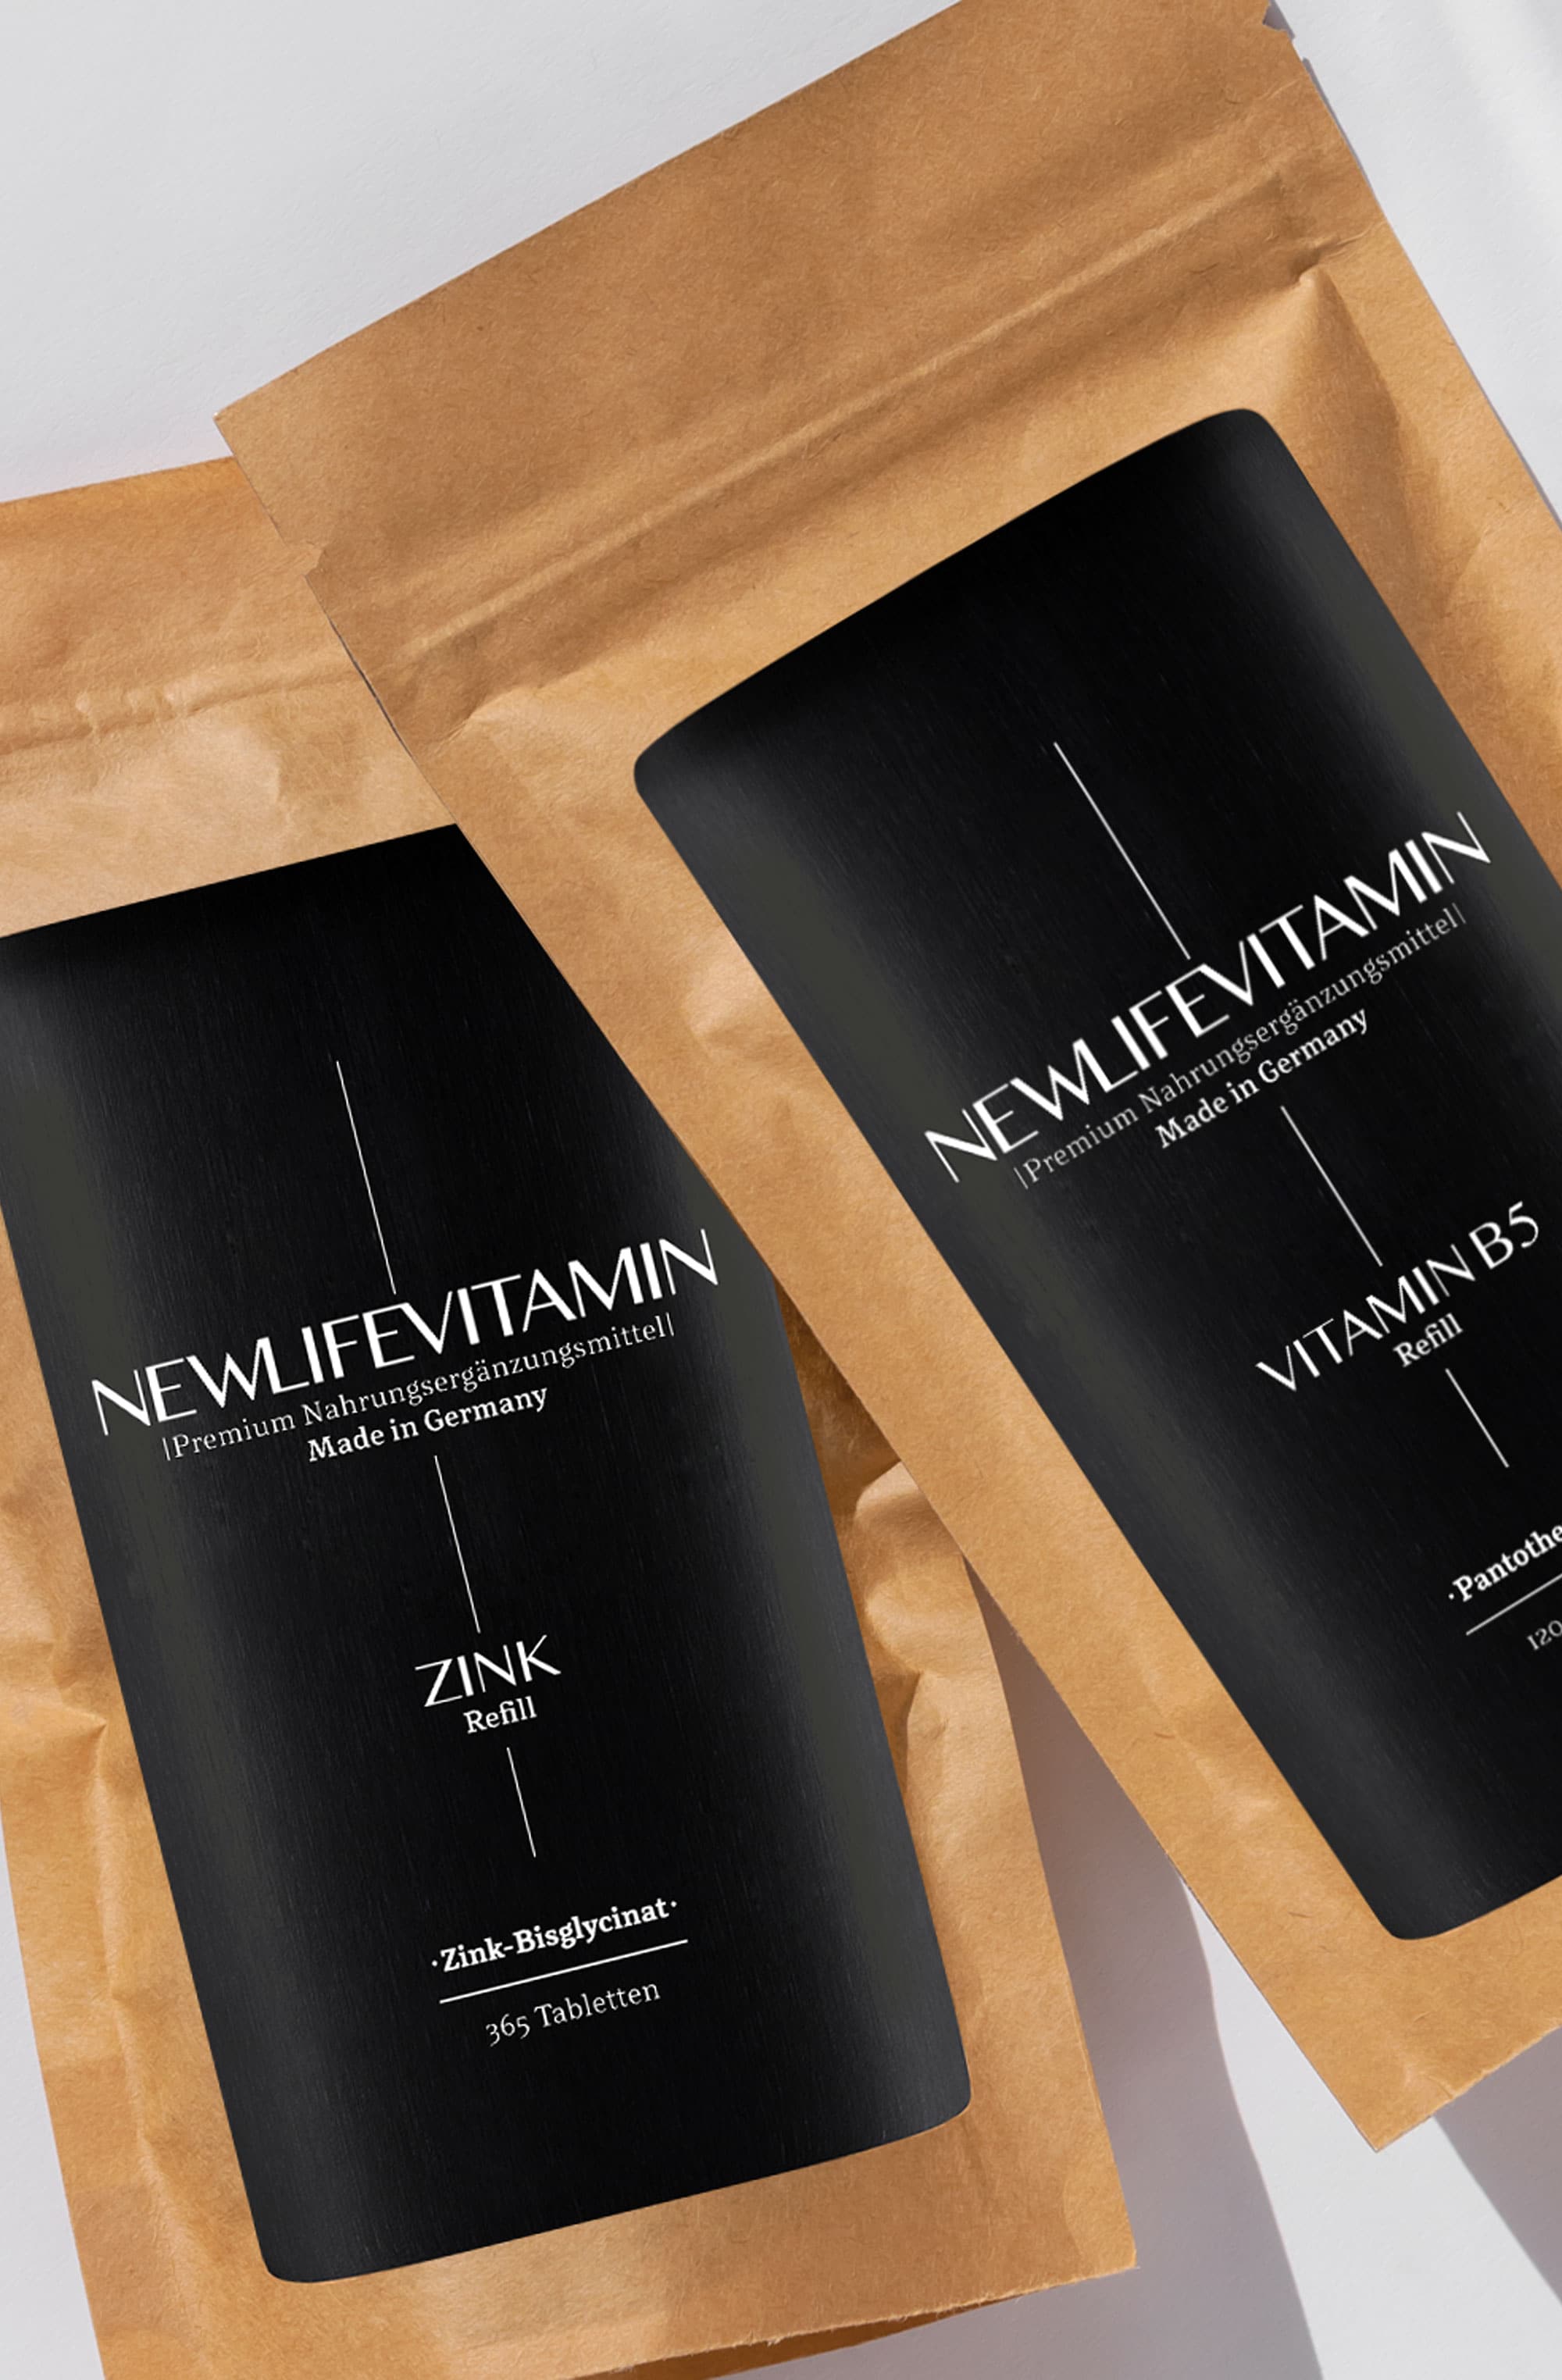 Zwei Refill-Tüten der Marke Newlifevitamin mit Produktnamen Zink und Vitamin B5